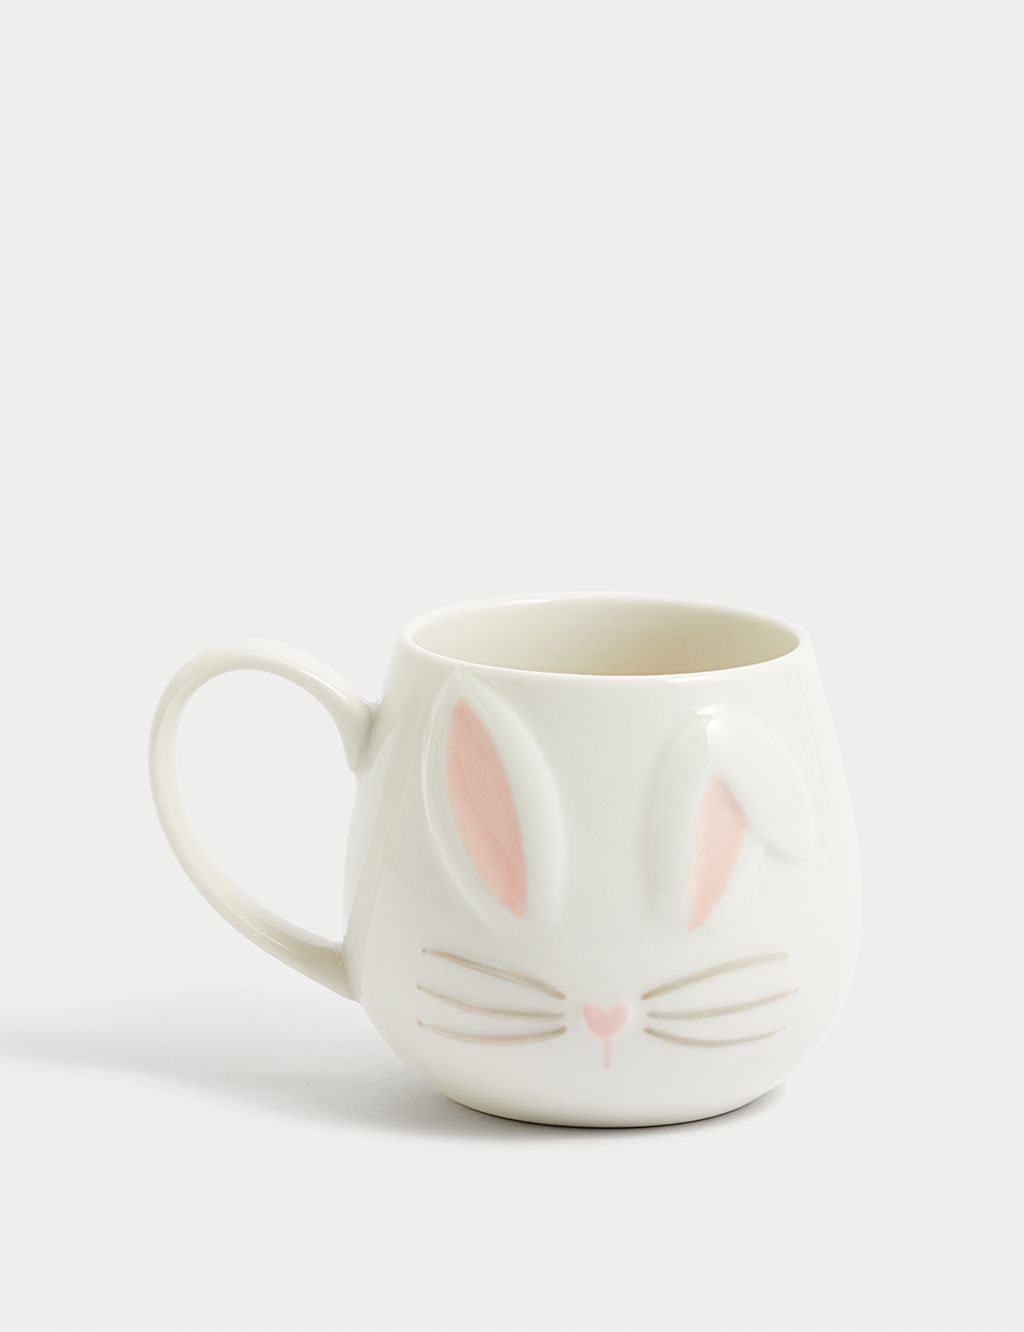 Bunny Mug 3 of 3